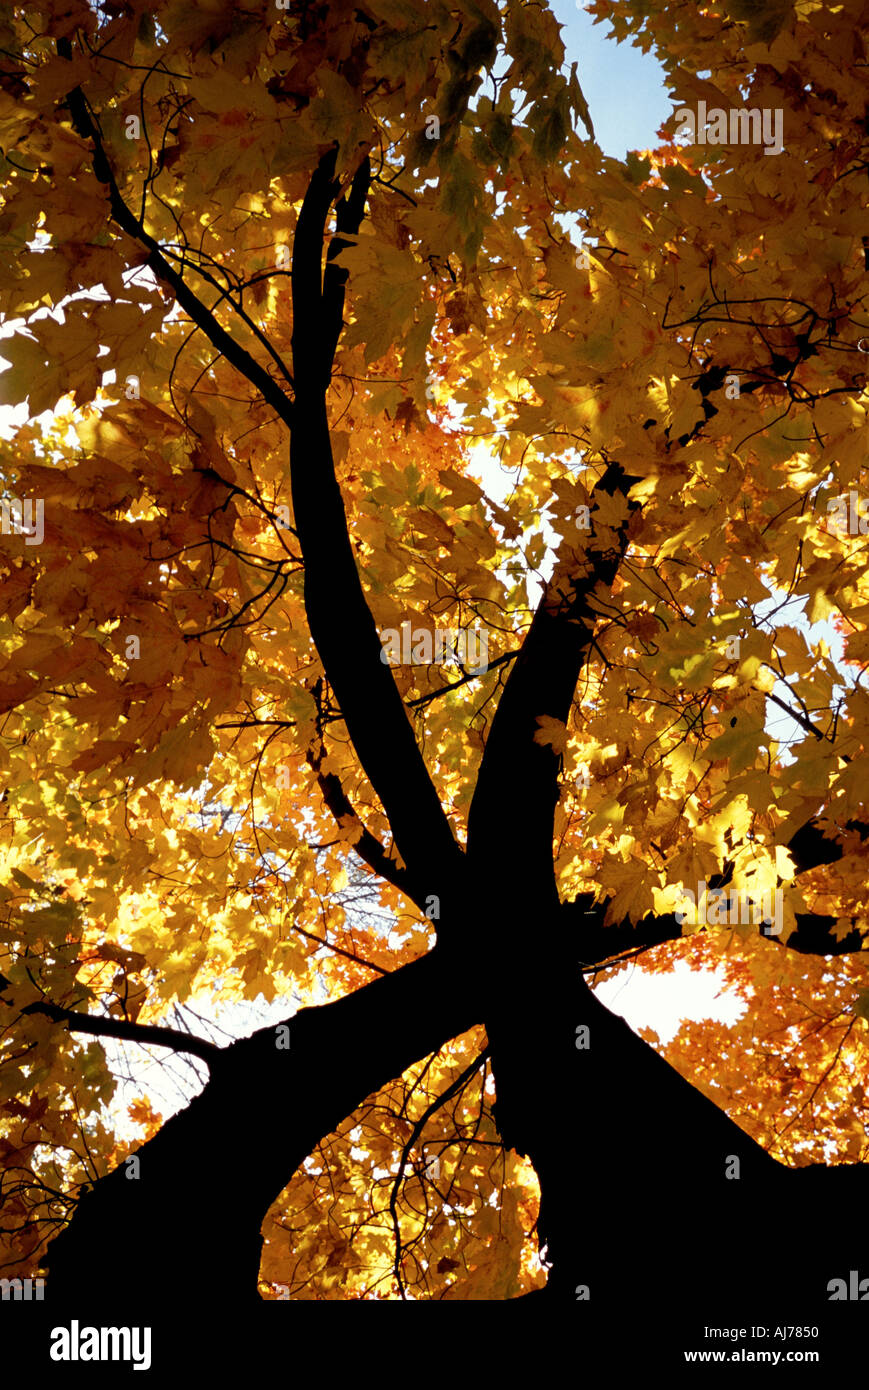 Ahornbaum im Herbst Farben mit Silhouette Stamm Stockfoto